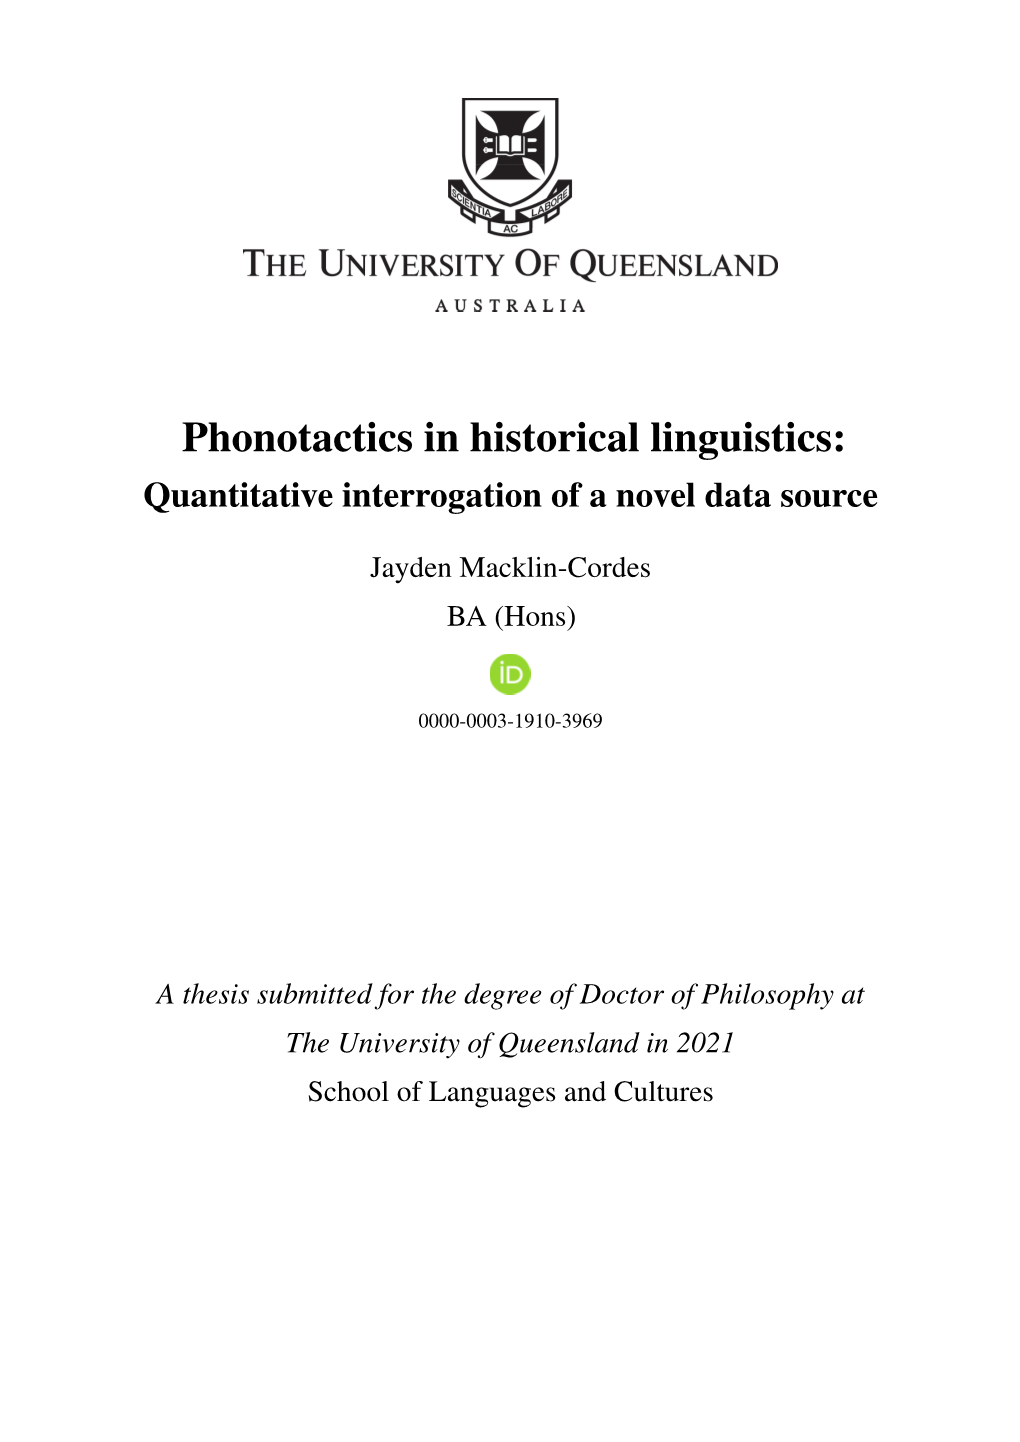 Phonotactics in Historical Linguistics: Quantitative Interrogation of a Novel Data Source